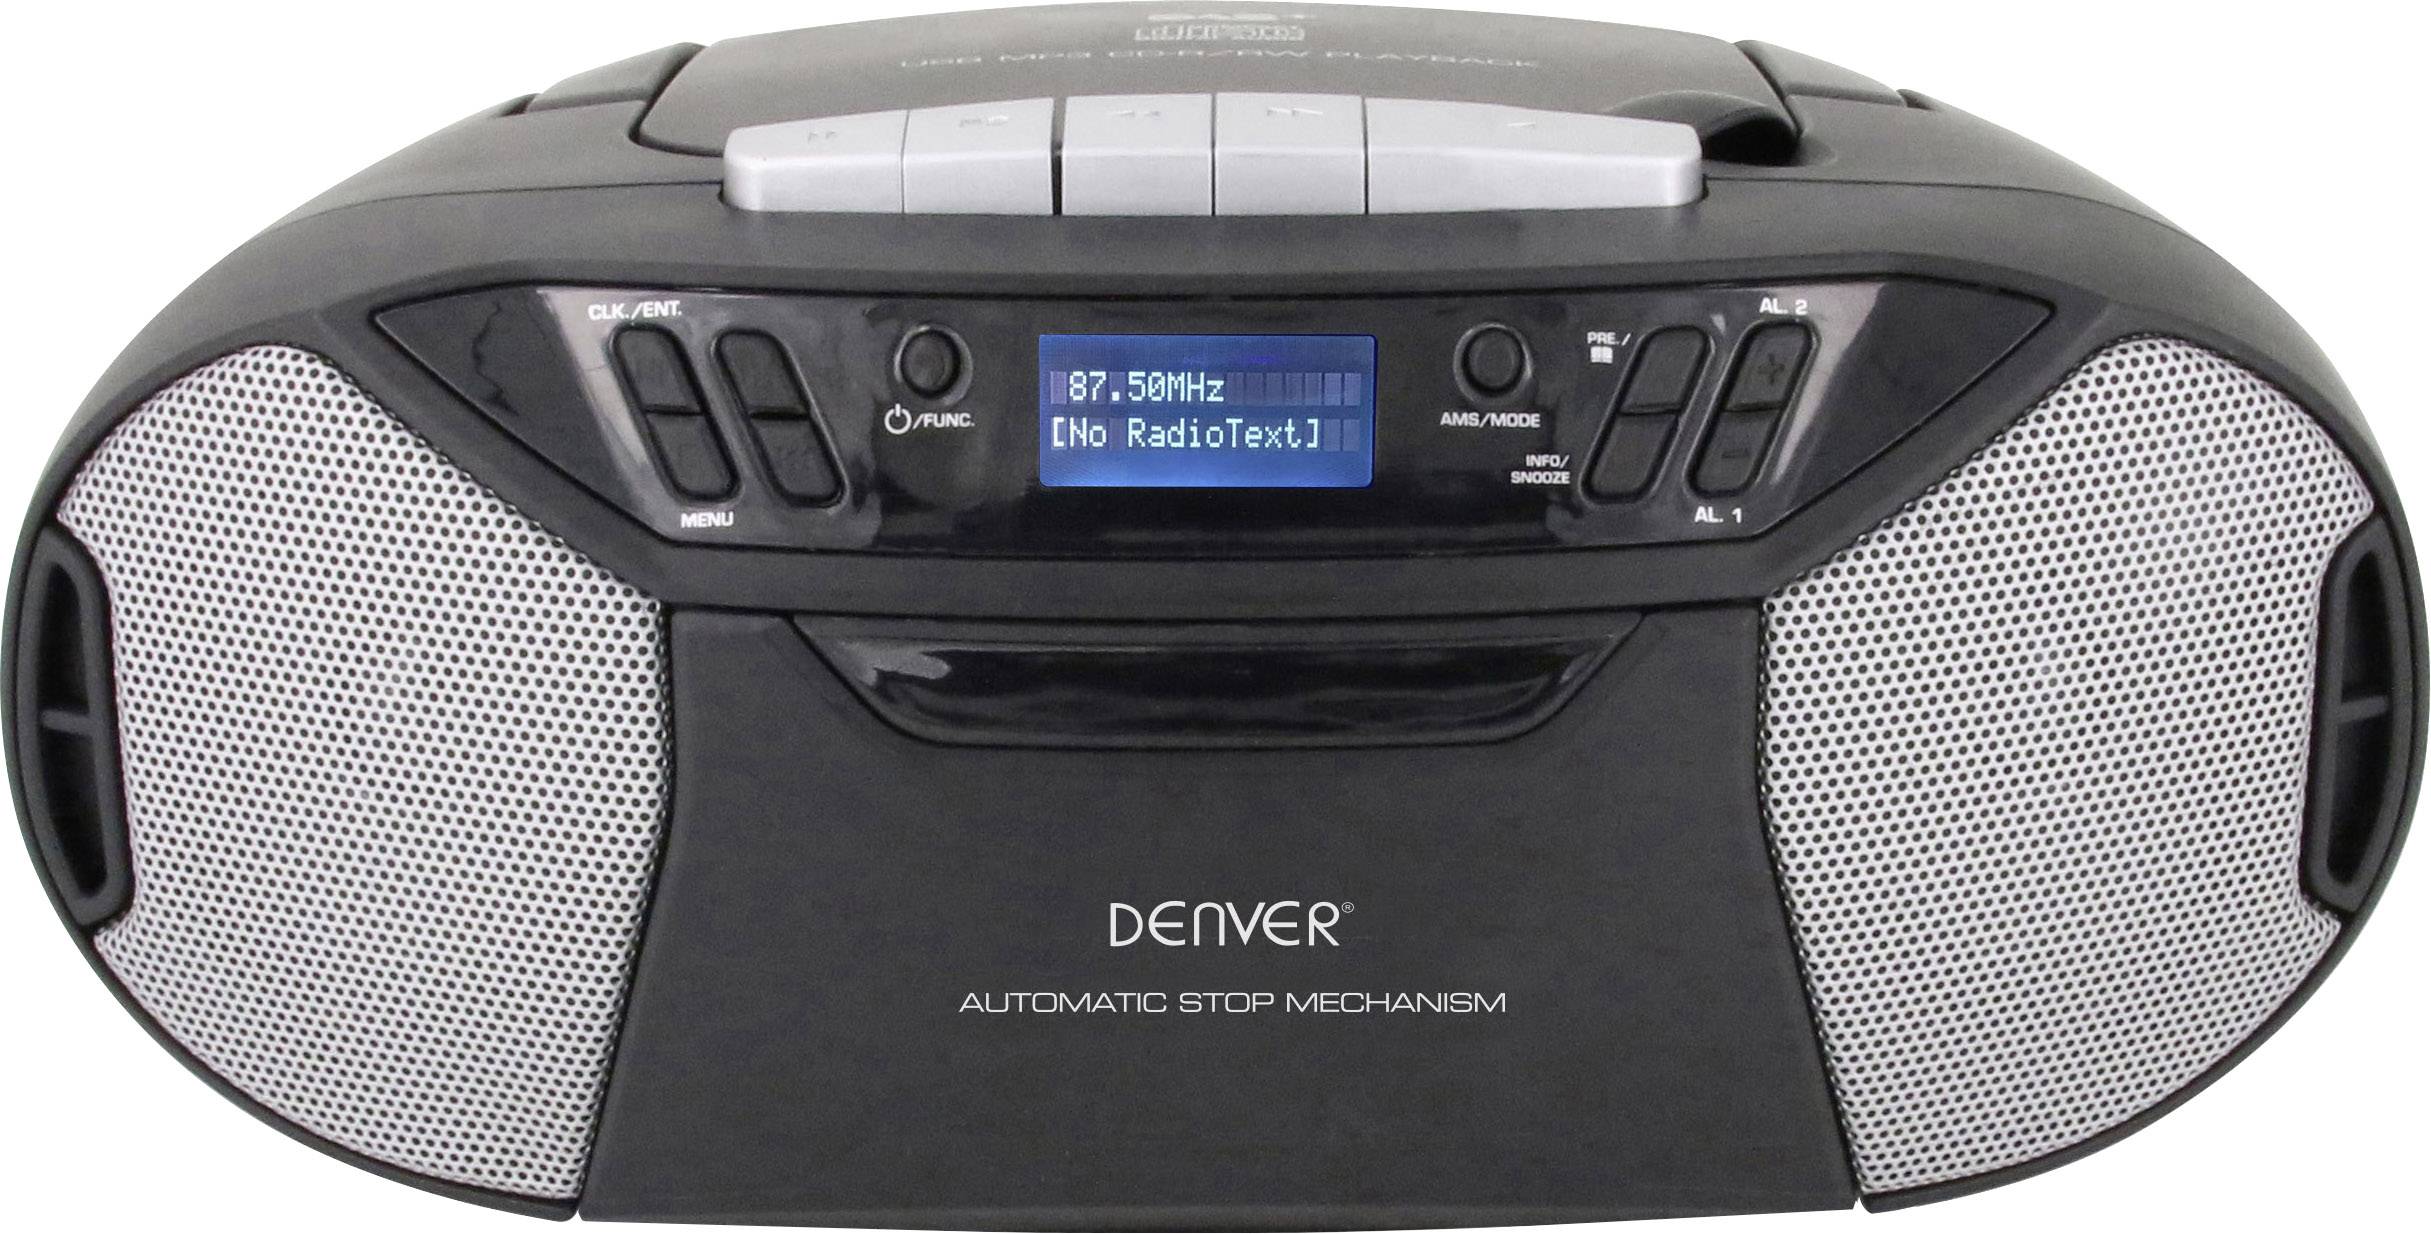 TDC-250 Radio CD player DAB+, FM AUX, CD, Tape, USB Black | Conrad.com